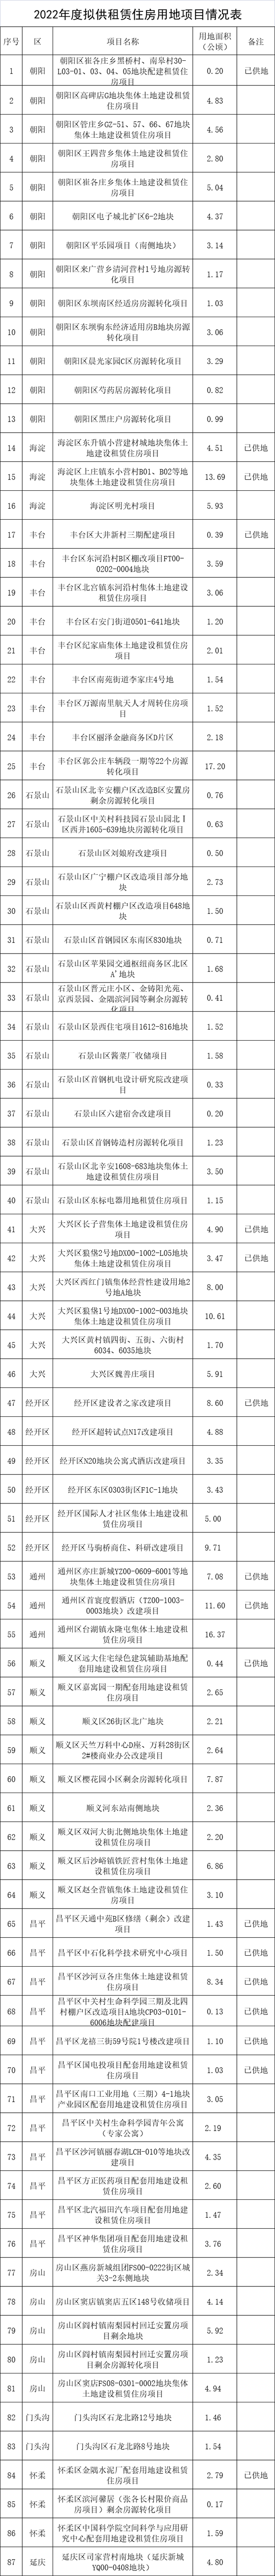 柔宇被曝6个月发不出工资未履行金额近亿元山东舰的详细技术参数